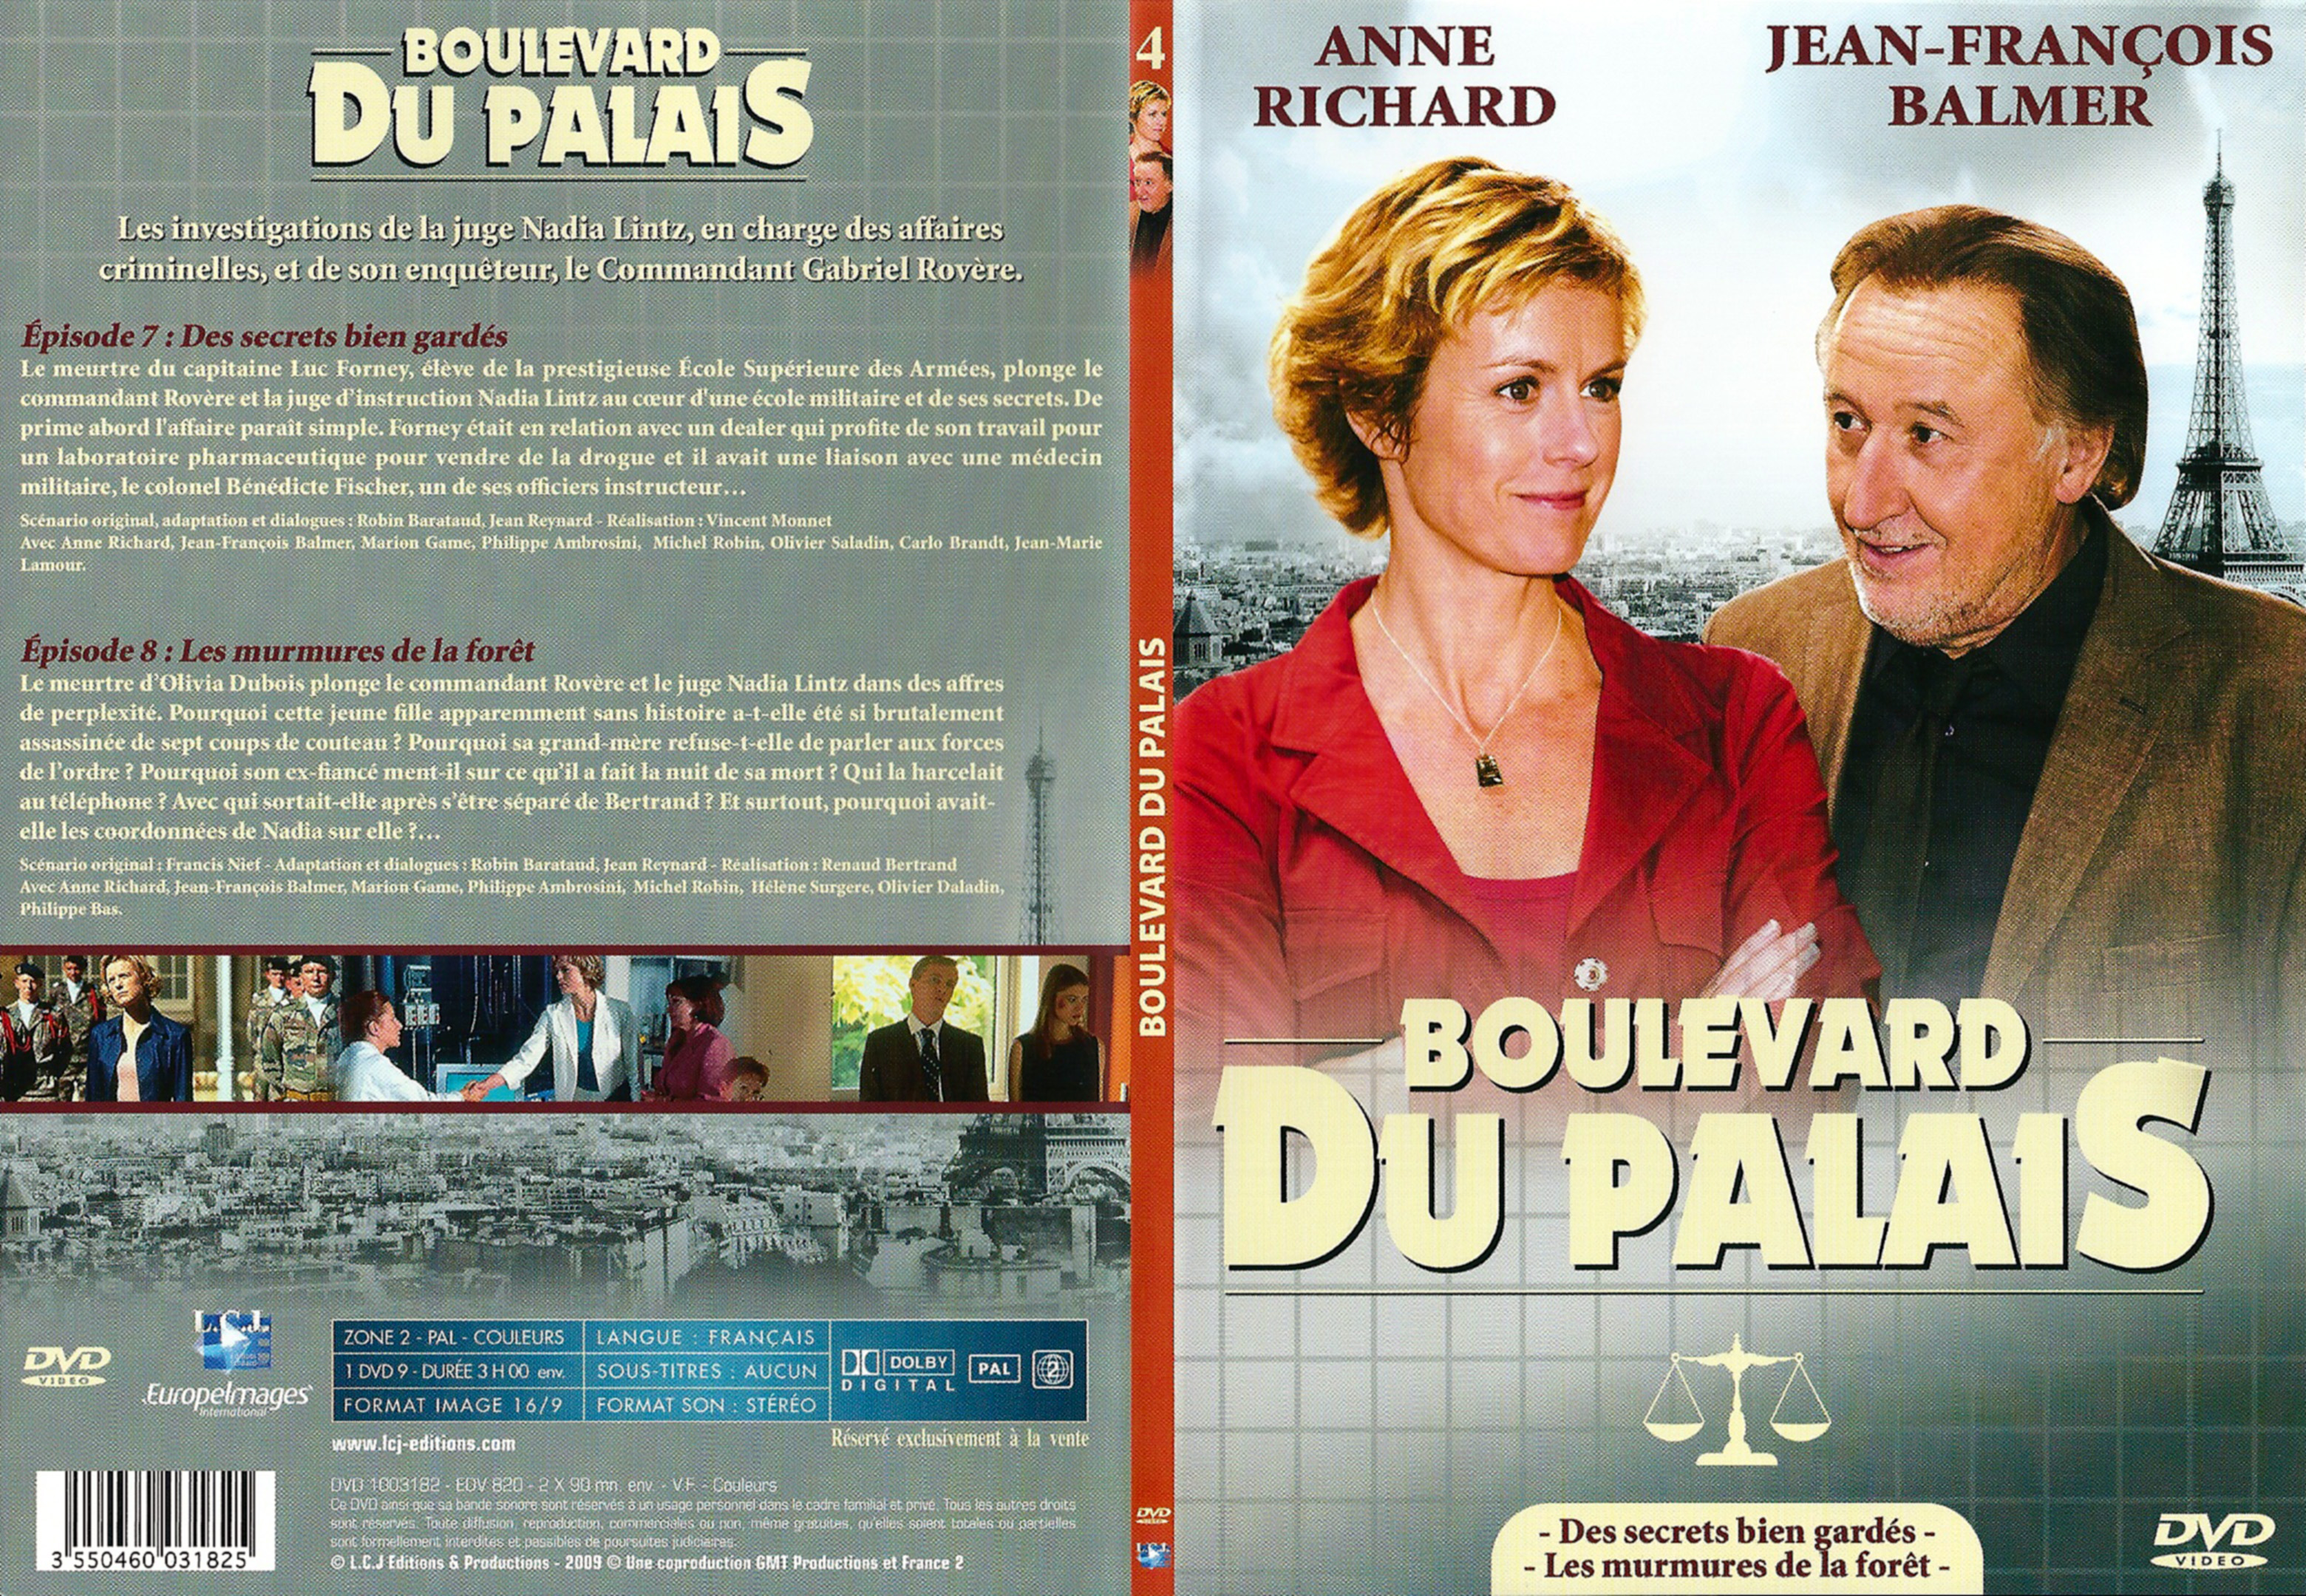 Jaquette DVD Boulevard du palais Saison 1 DVD 4